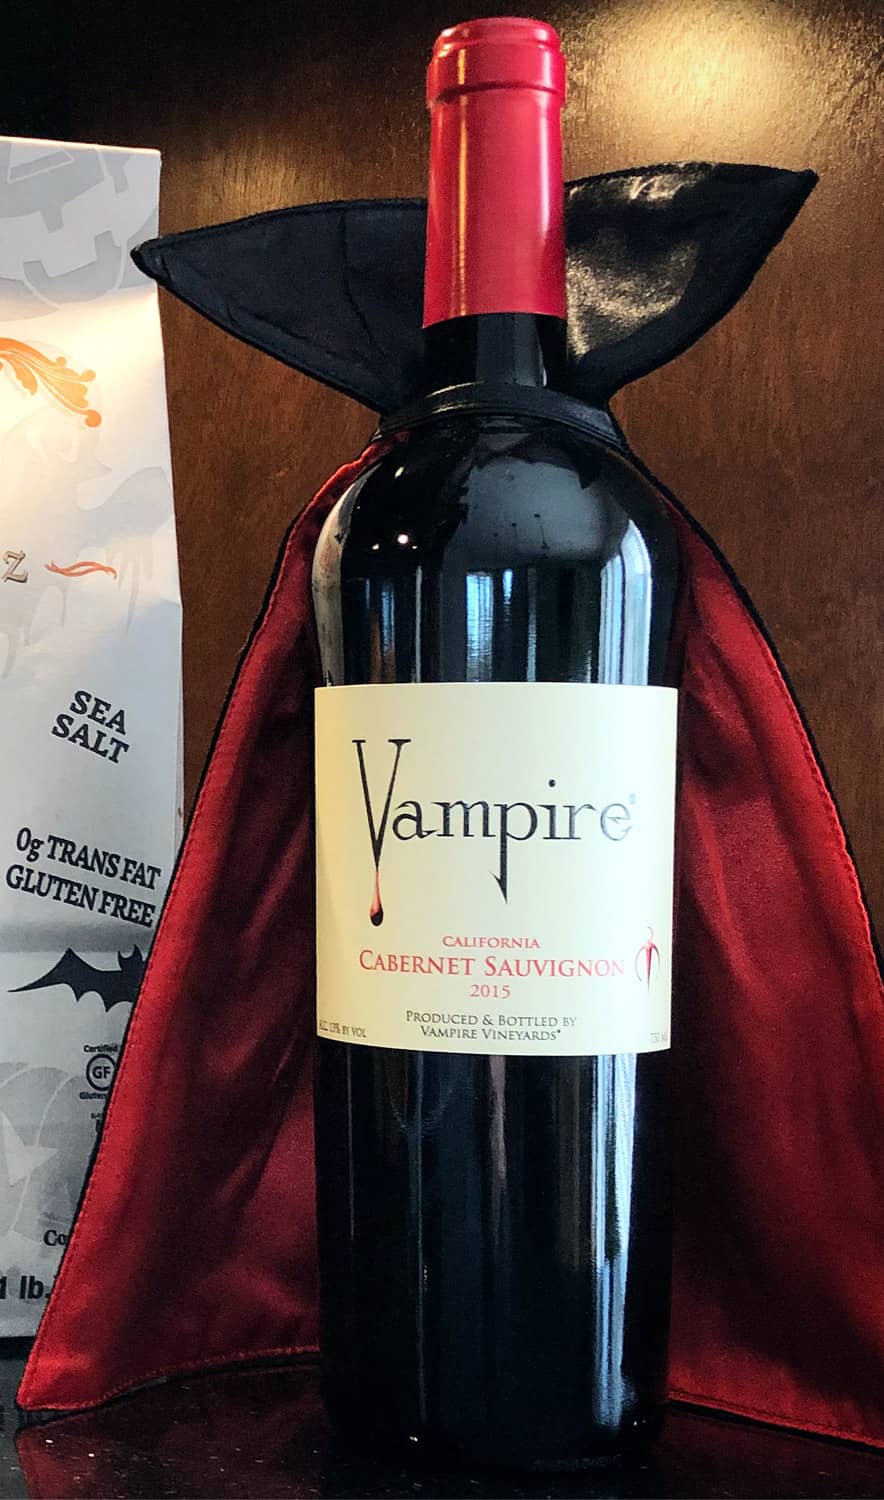 Blood-Thirsty Vampire Wine Bottle Holder 